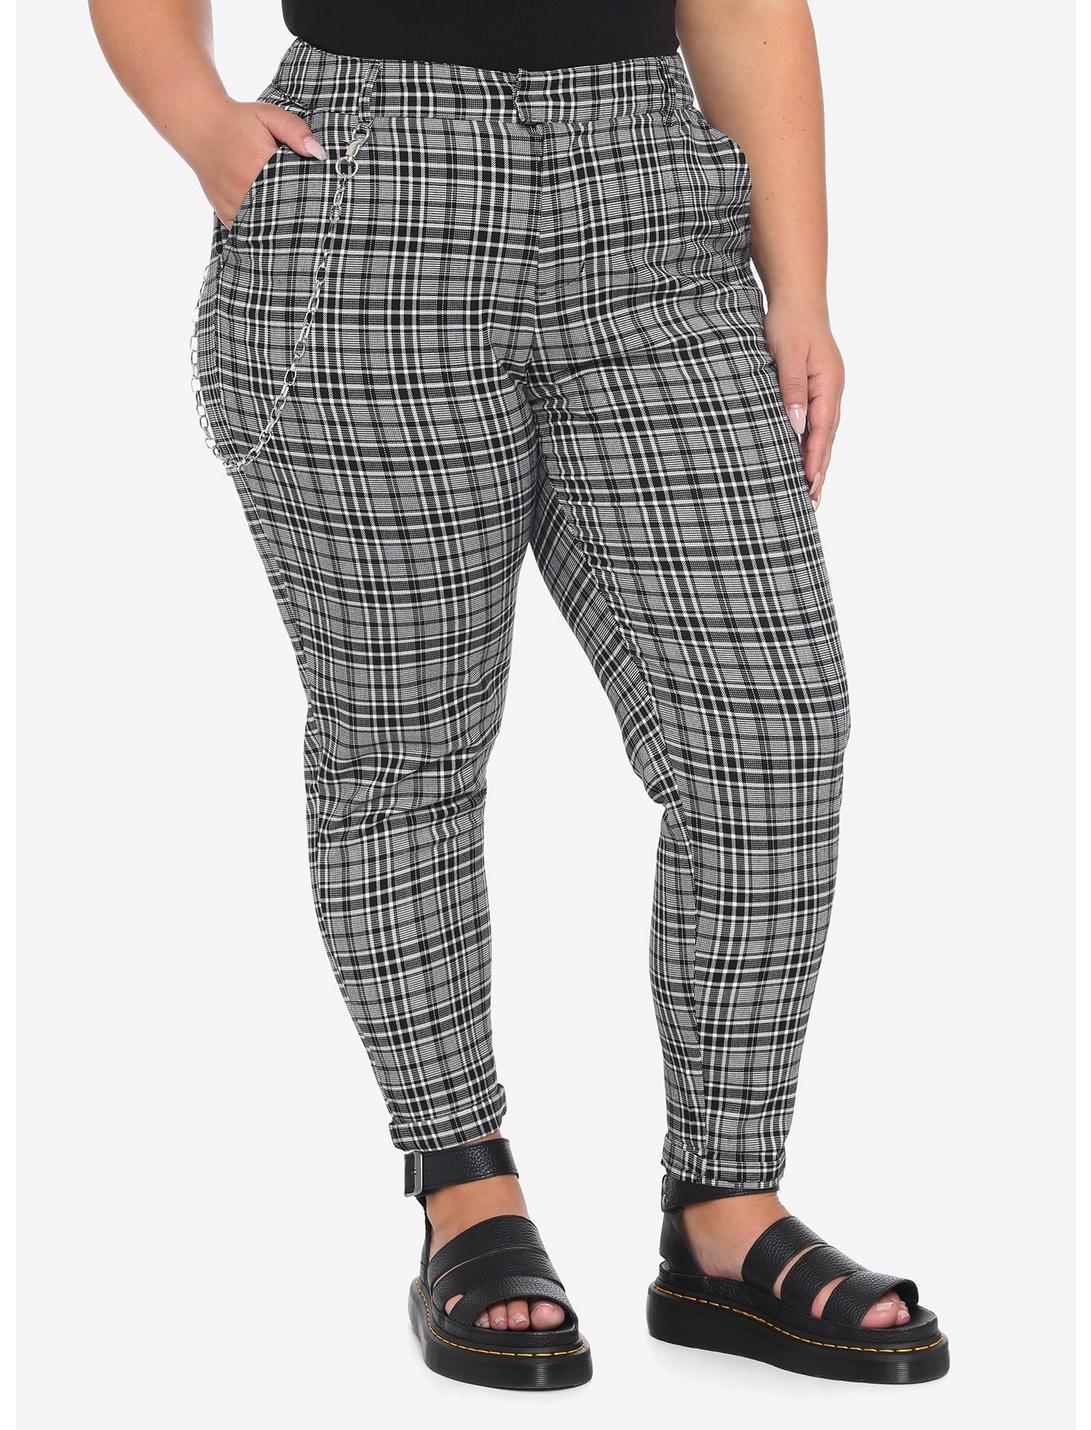 Black & White Plaid Pants With Detachable Chain Plus Size, PLAID - GREY, hi-res